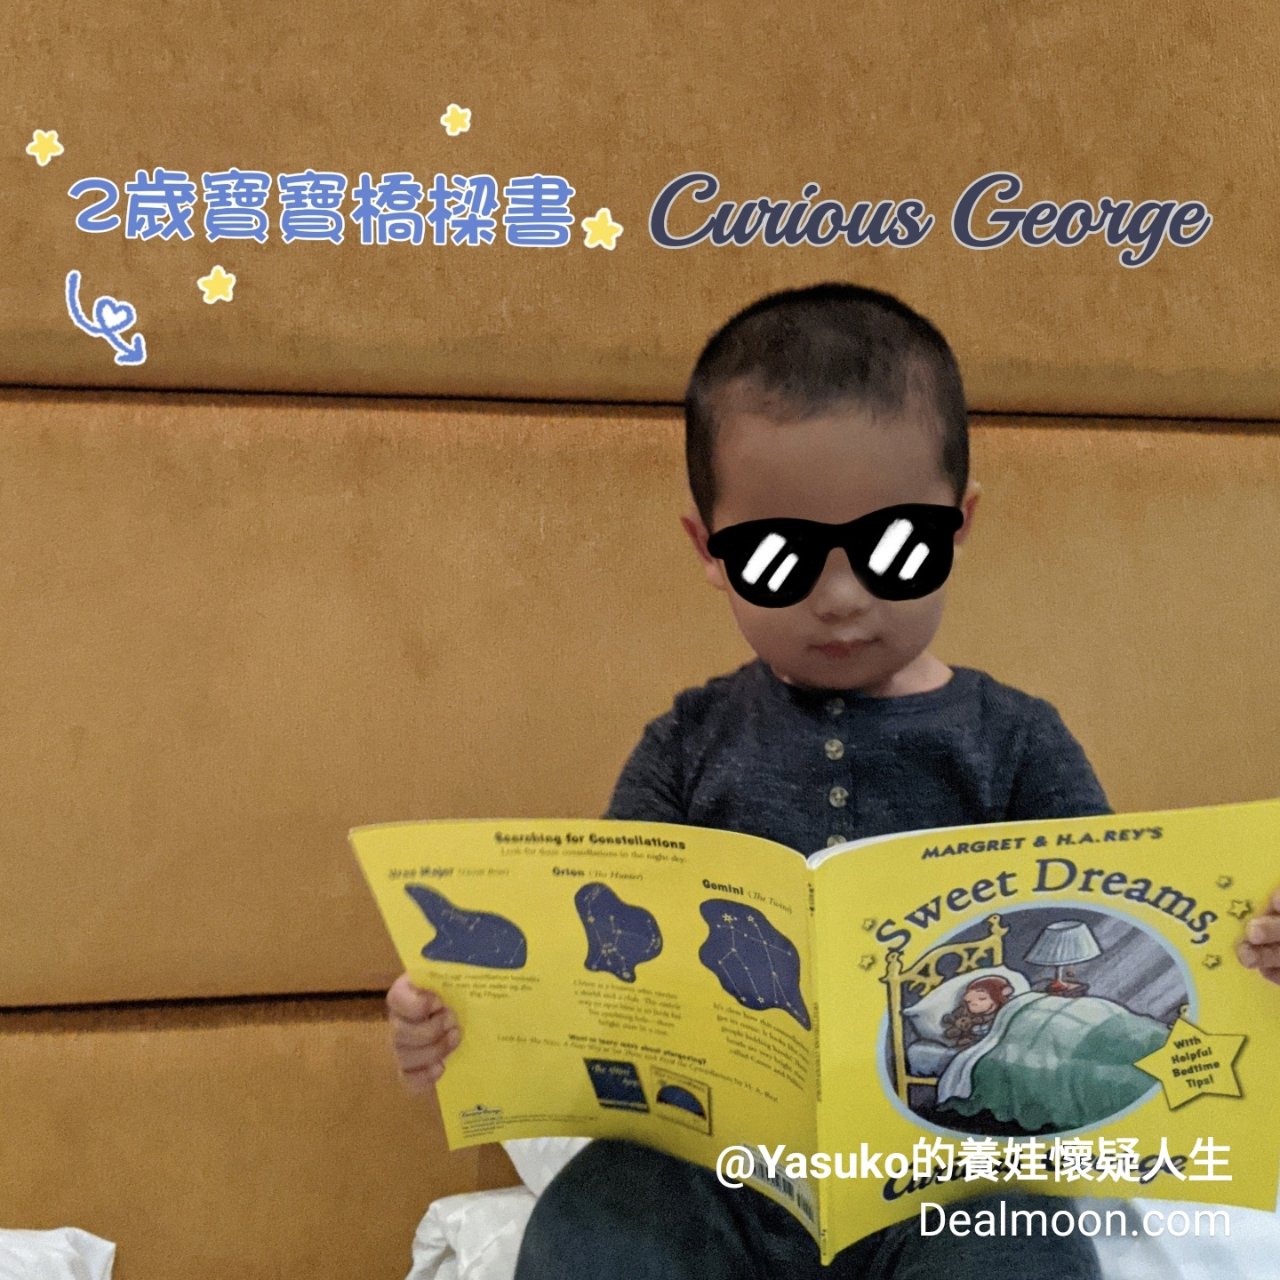 5.兩歲寶寶橋樑書分享Curious G...